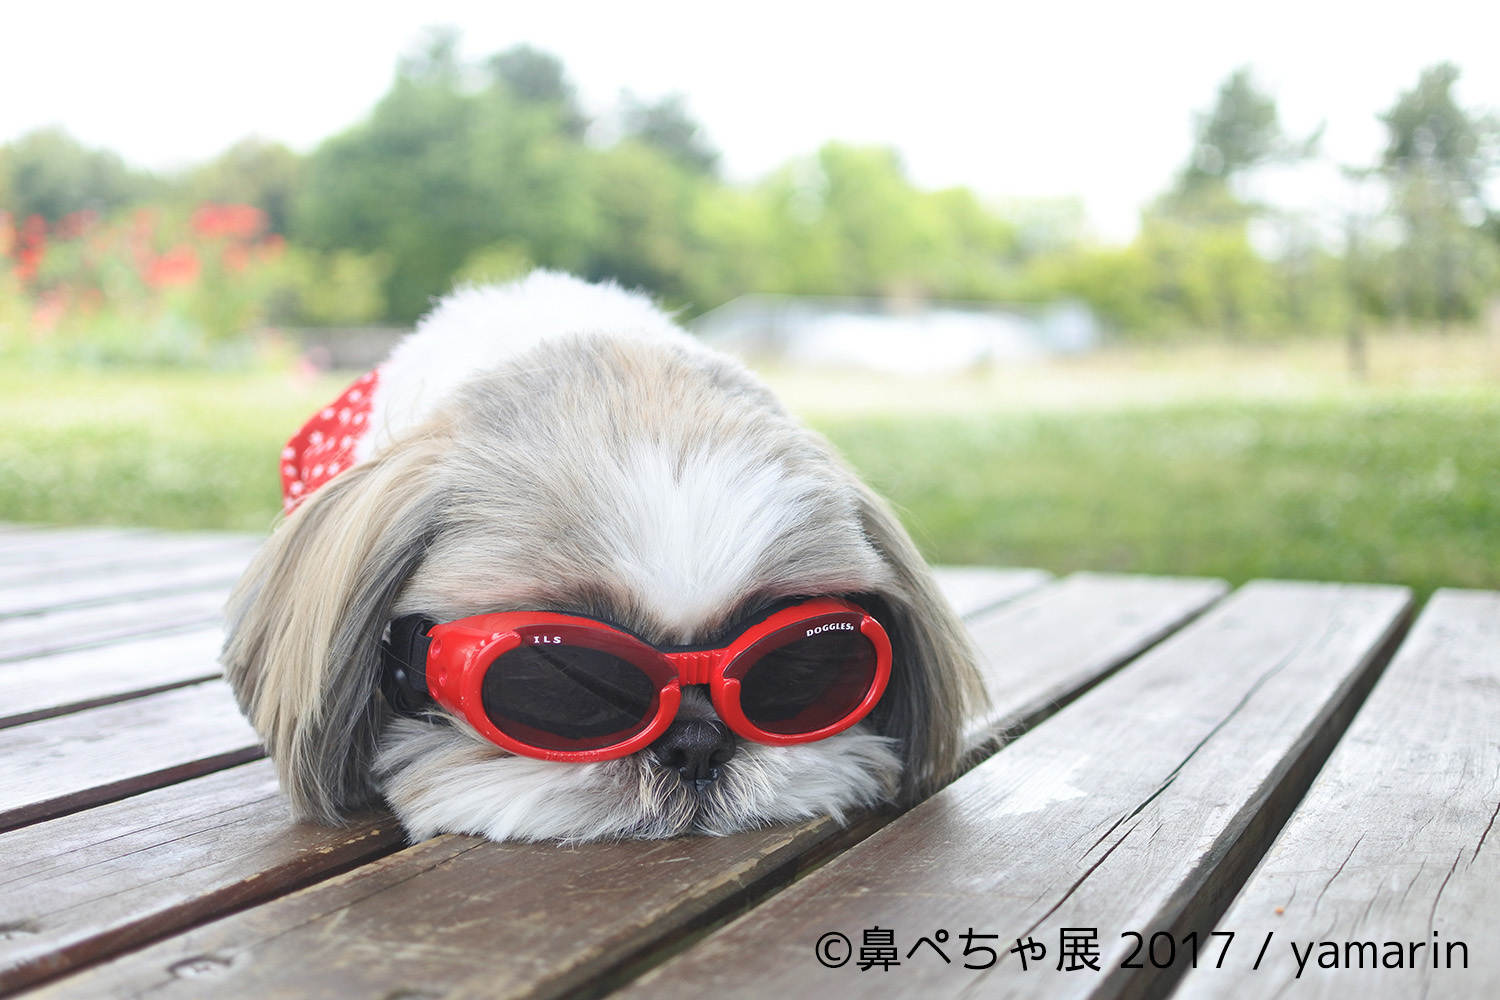 画像 ブサカワな 鼻ぺちゃ犬 の写真展が浅草橋にて開催 フレンチブルにパグにチワワまで インスタ有名犬が大集合 の画像12 Spice エンタメ特化型情報メディア スパイス